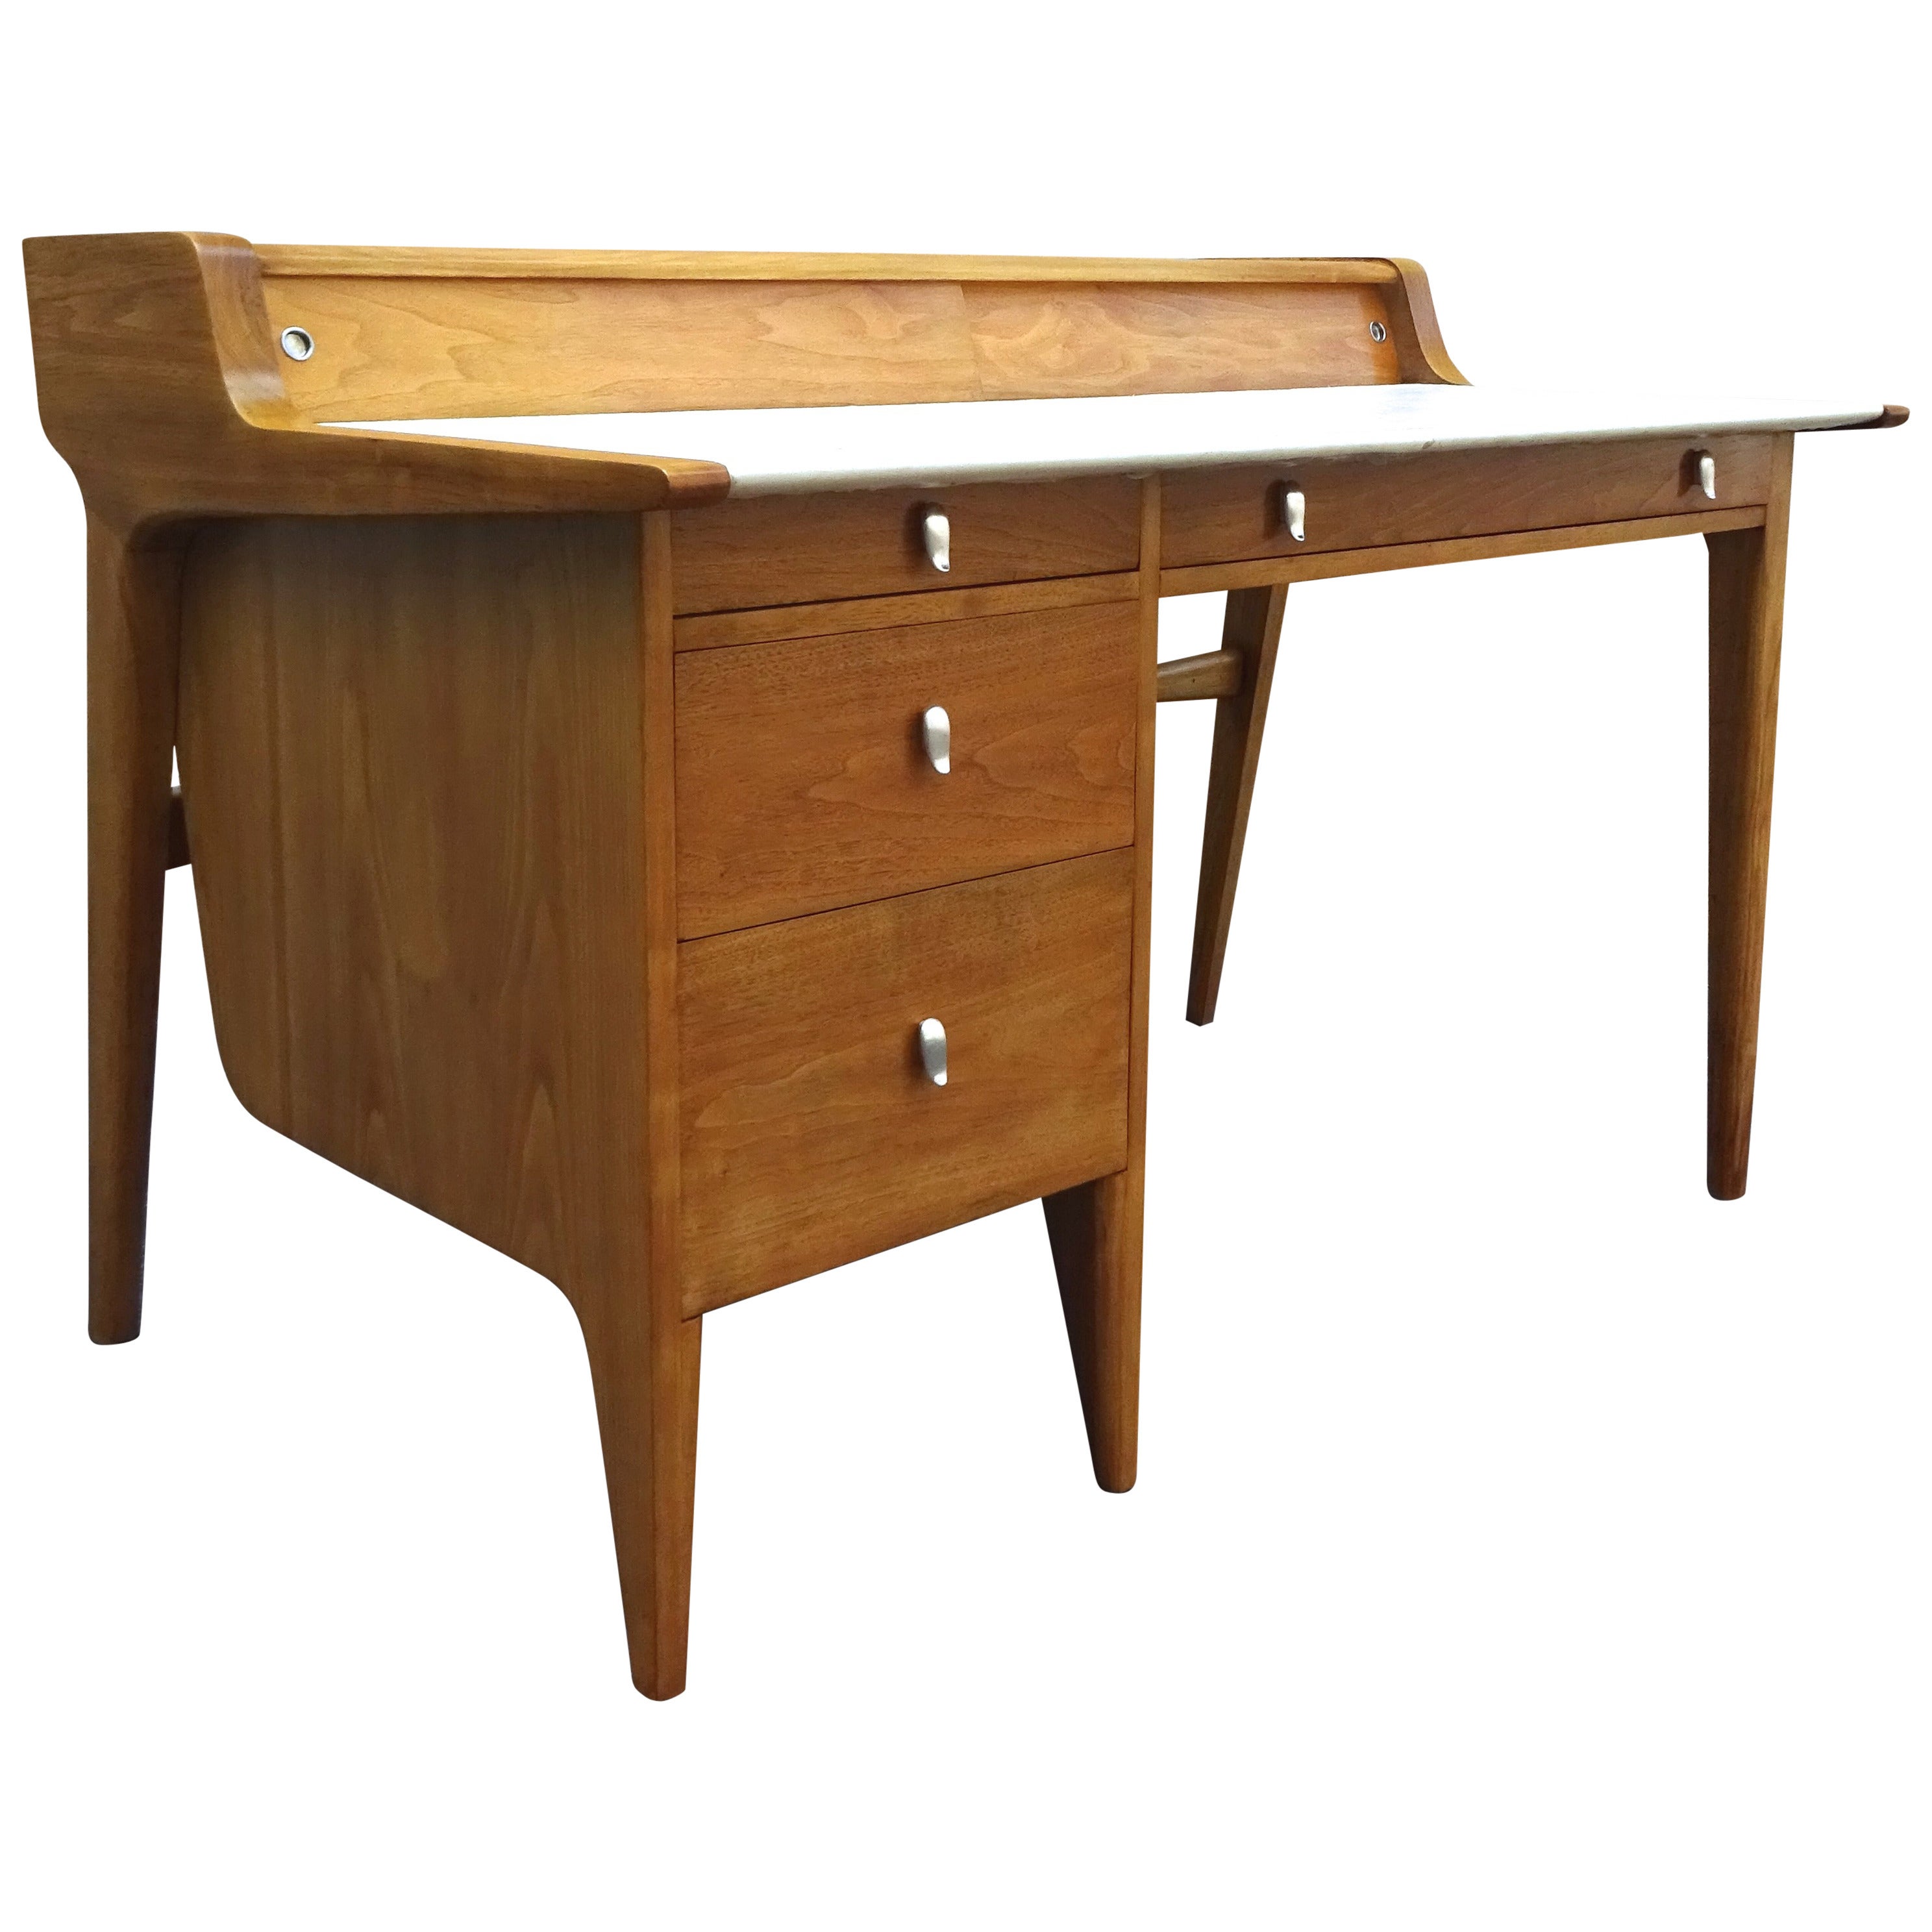 Sculptural 1950s American Modernist Bleached Walnut Desk For Sale